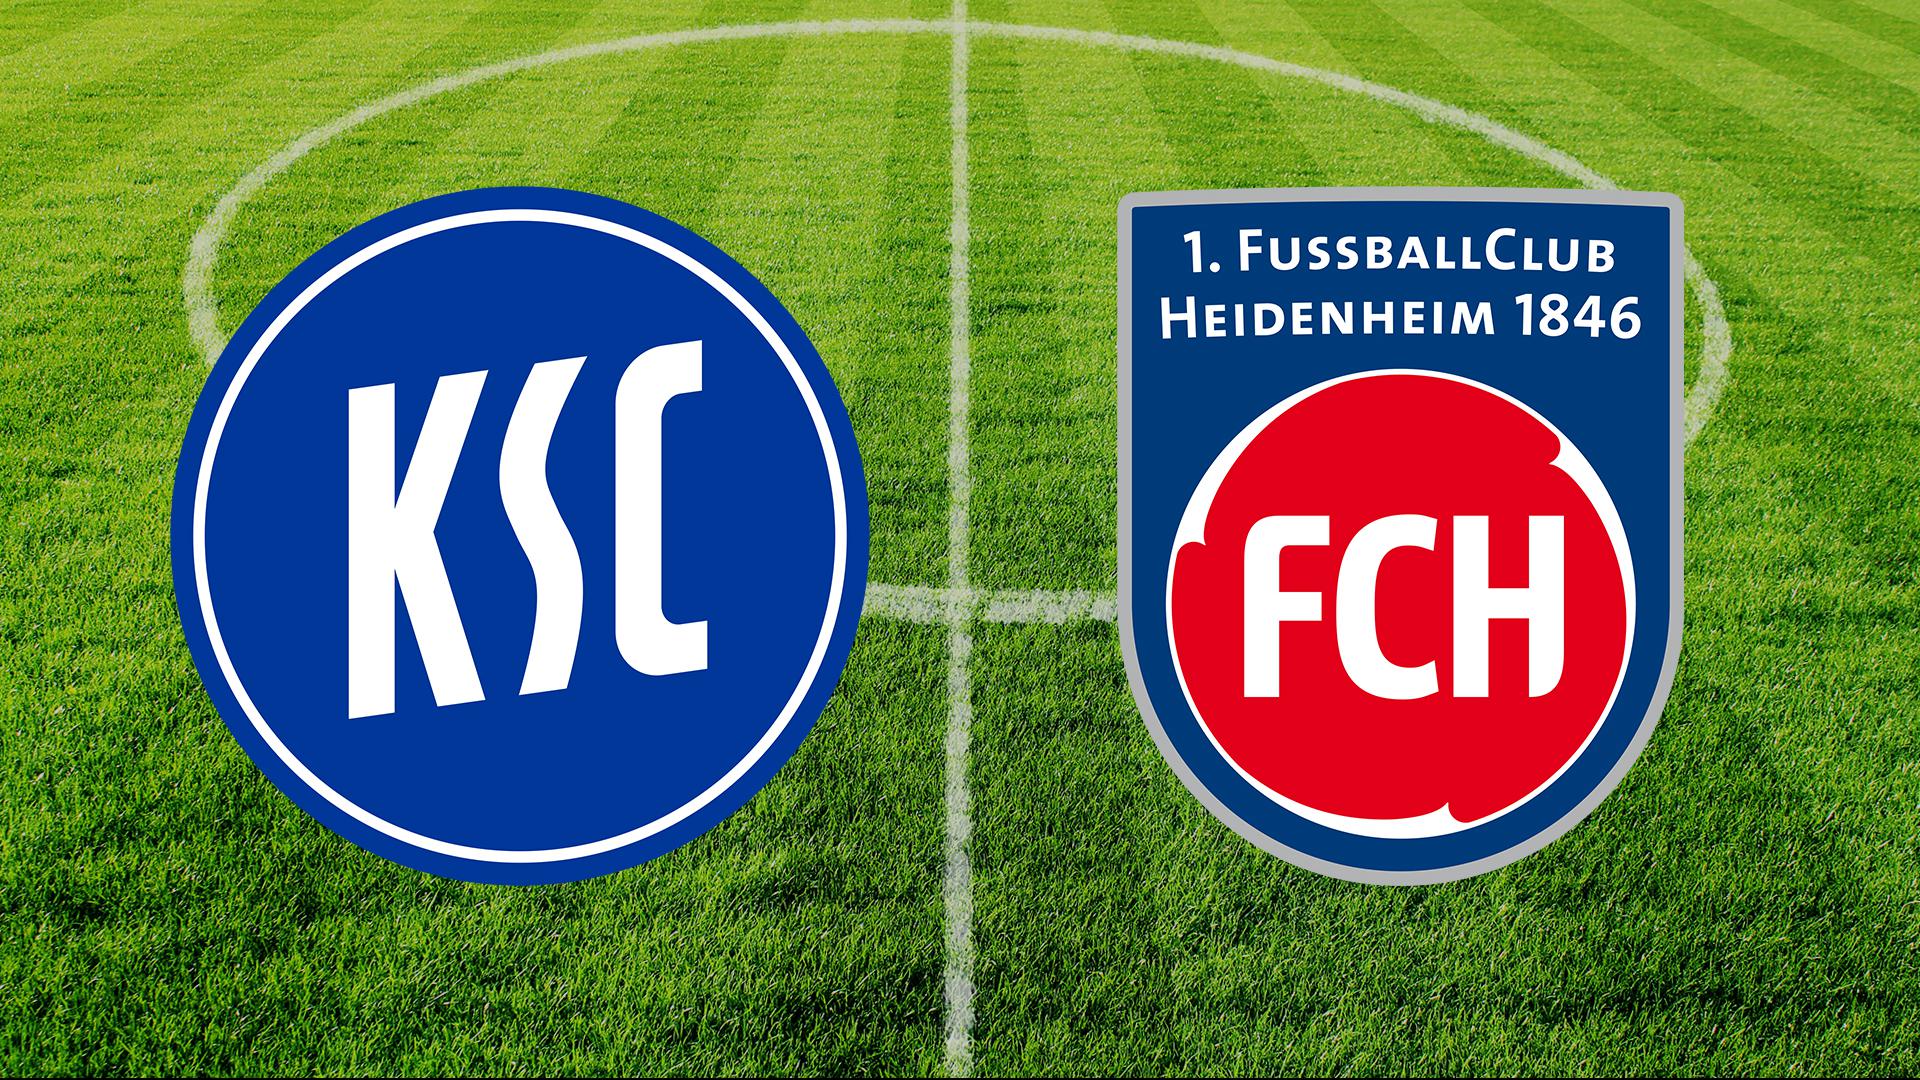 Der KSC trifft am Samstag im Wildpark auf den laufstarken 1. FC Heidenheim. Die ganze Partie im Live-Ticker.